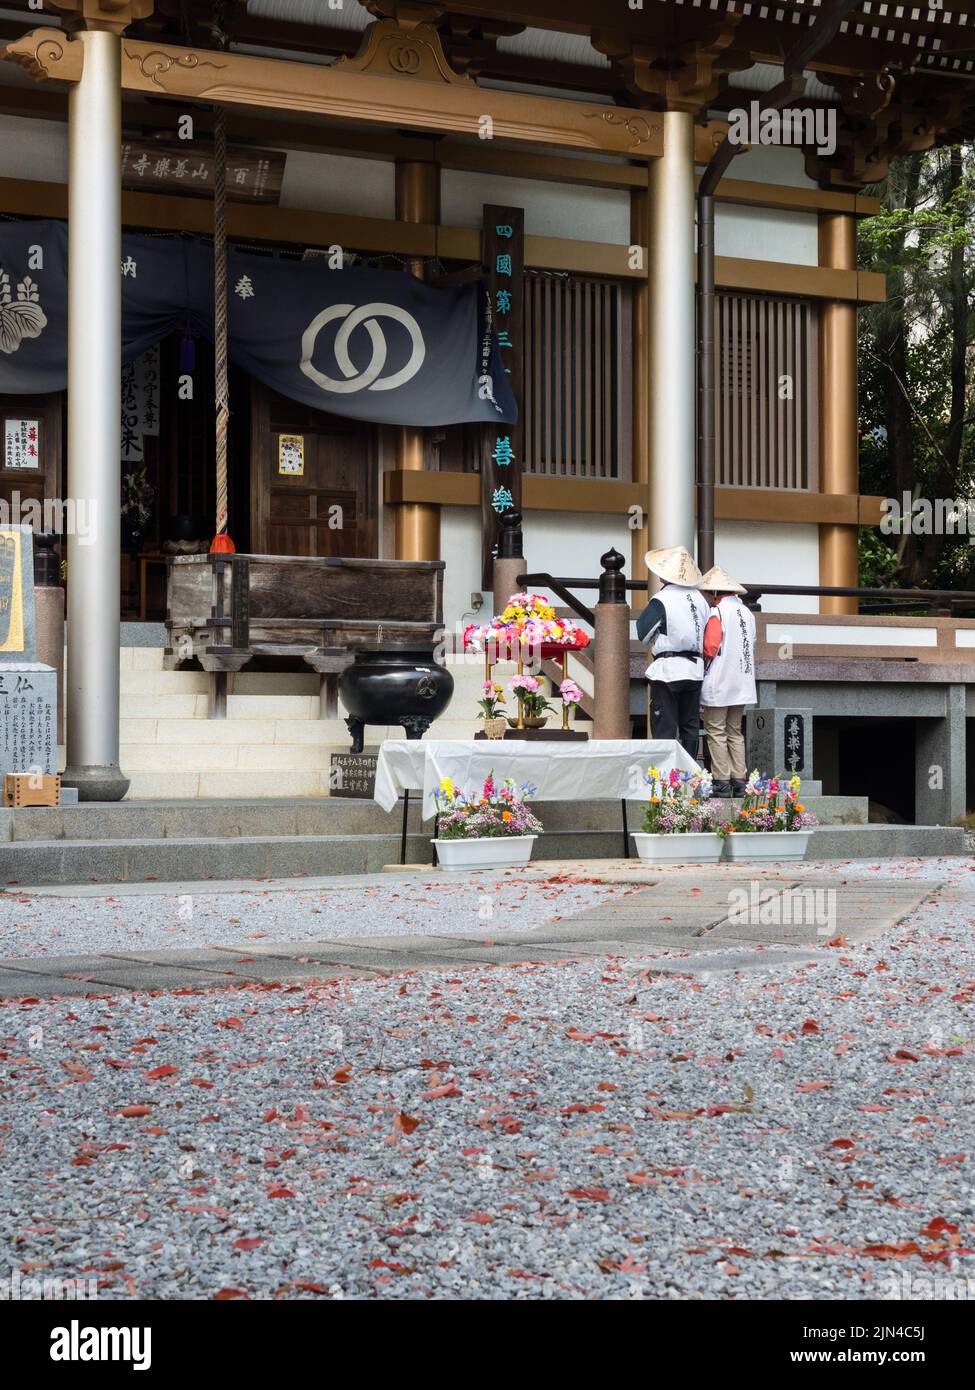 Kochi, Japan - 6. April 2018: Pilger beten in Zenrakuji, Tempel Nummer 30 der Shikoku-Wallfahrt Stockfoto